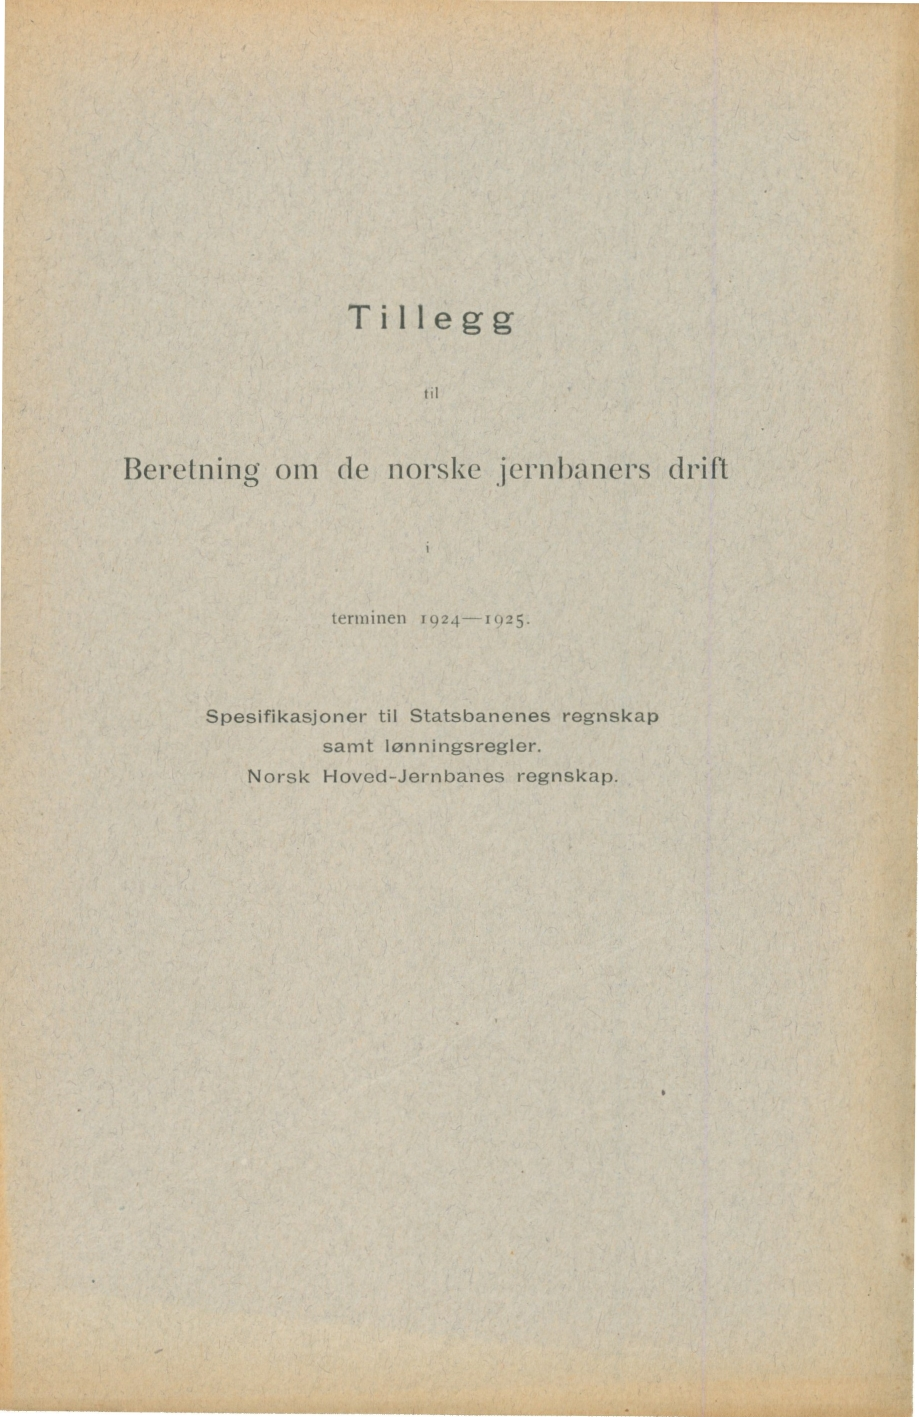 Tillegg til Beretning om de norske jernbaners drift terminen 1924-1925.